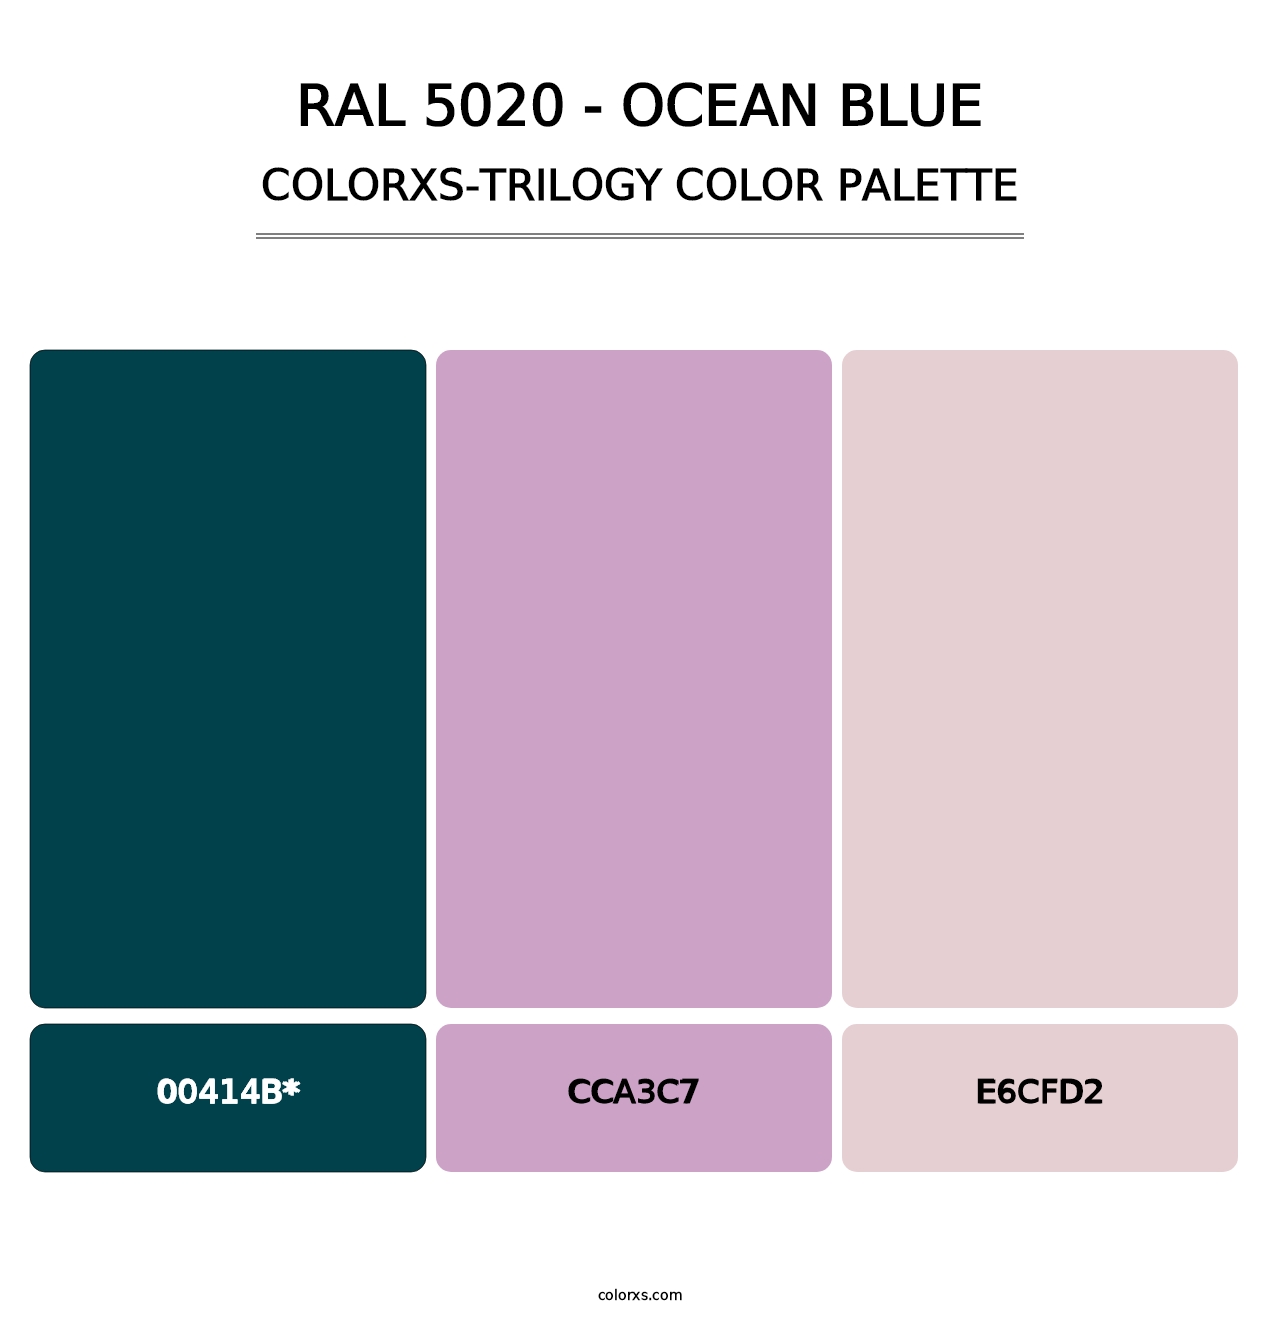 RAL 5020 - Ocean Blue - Colorxs Trilogy Palette